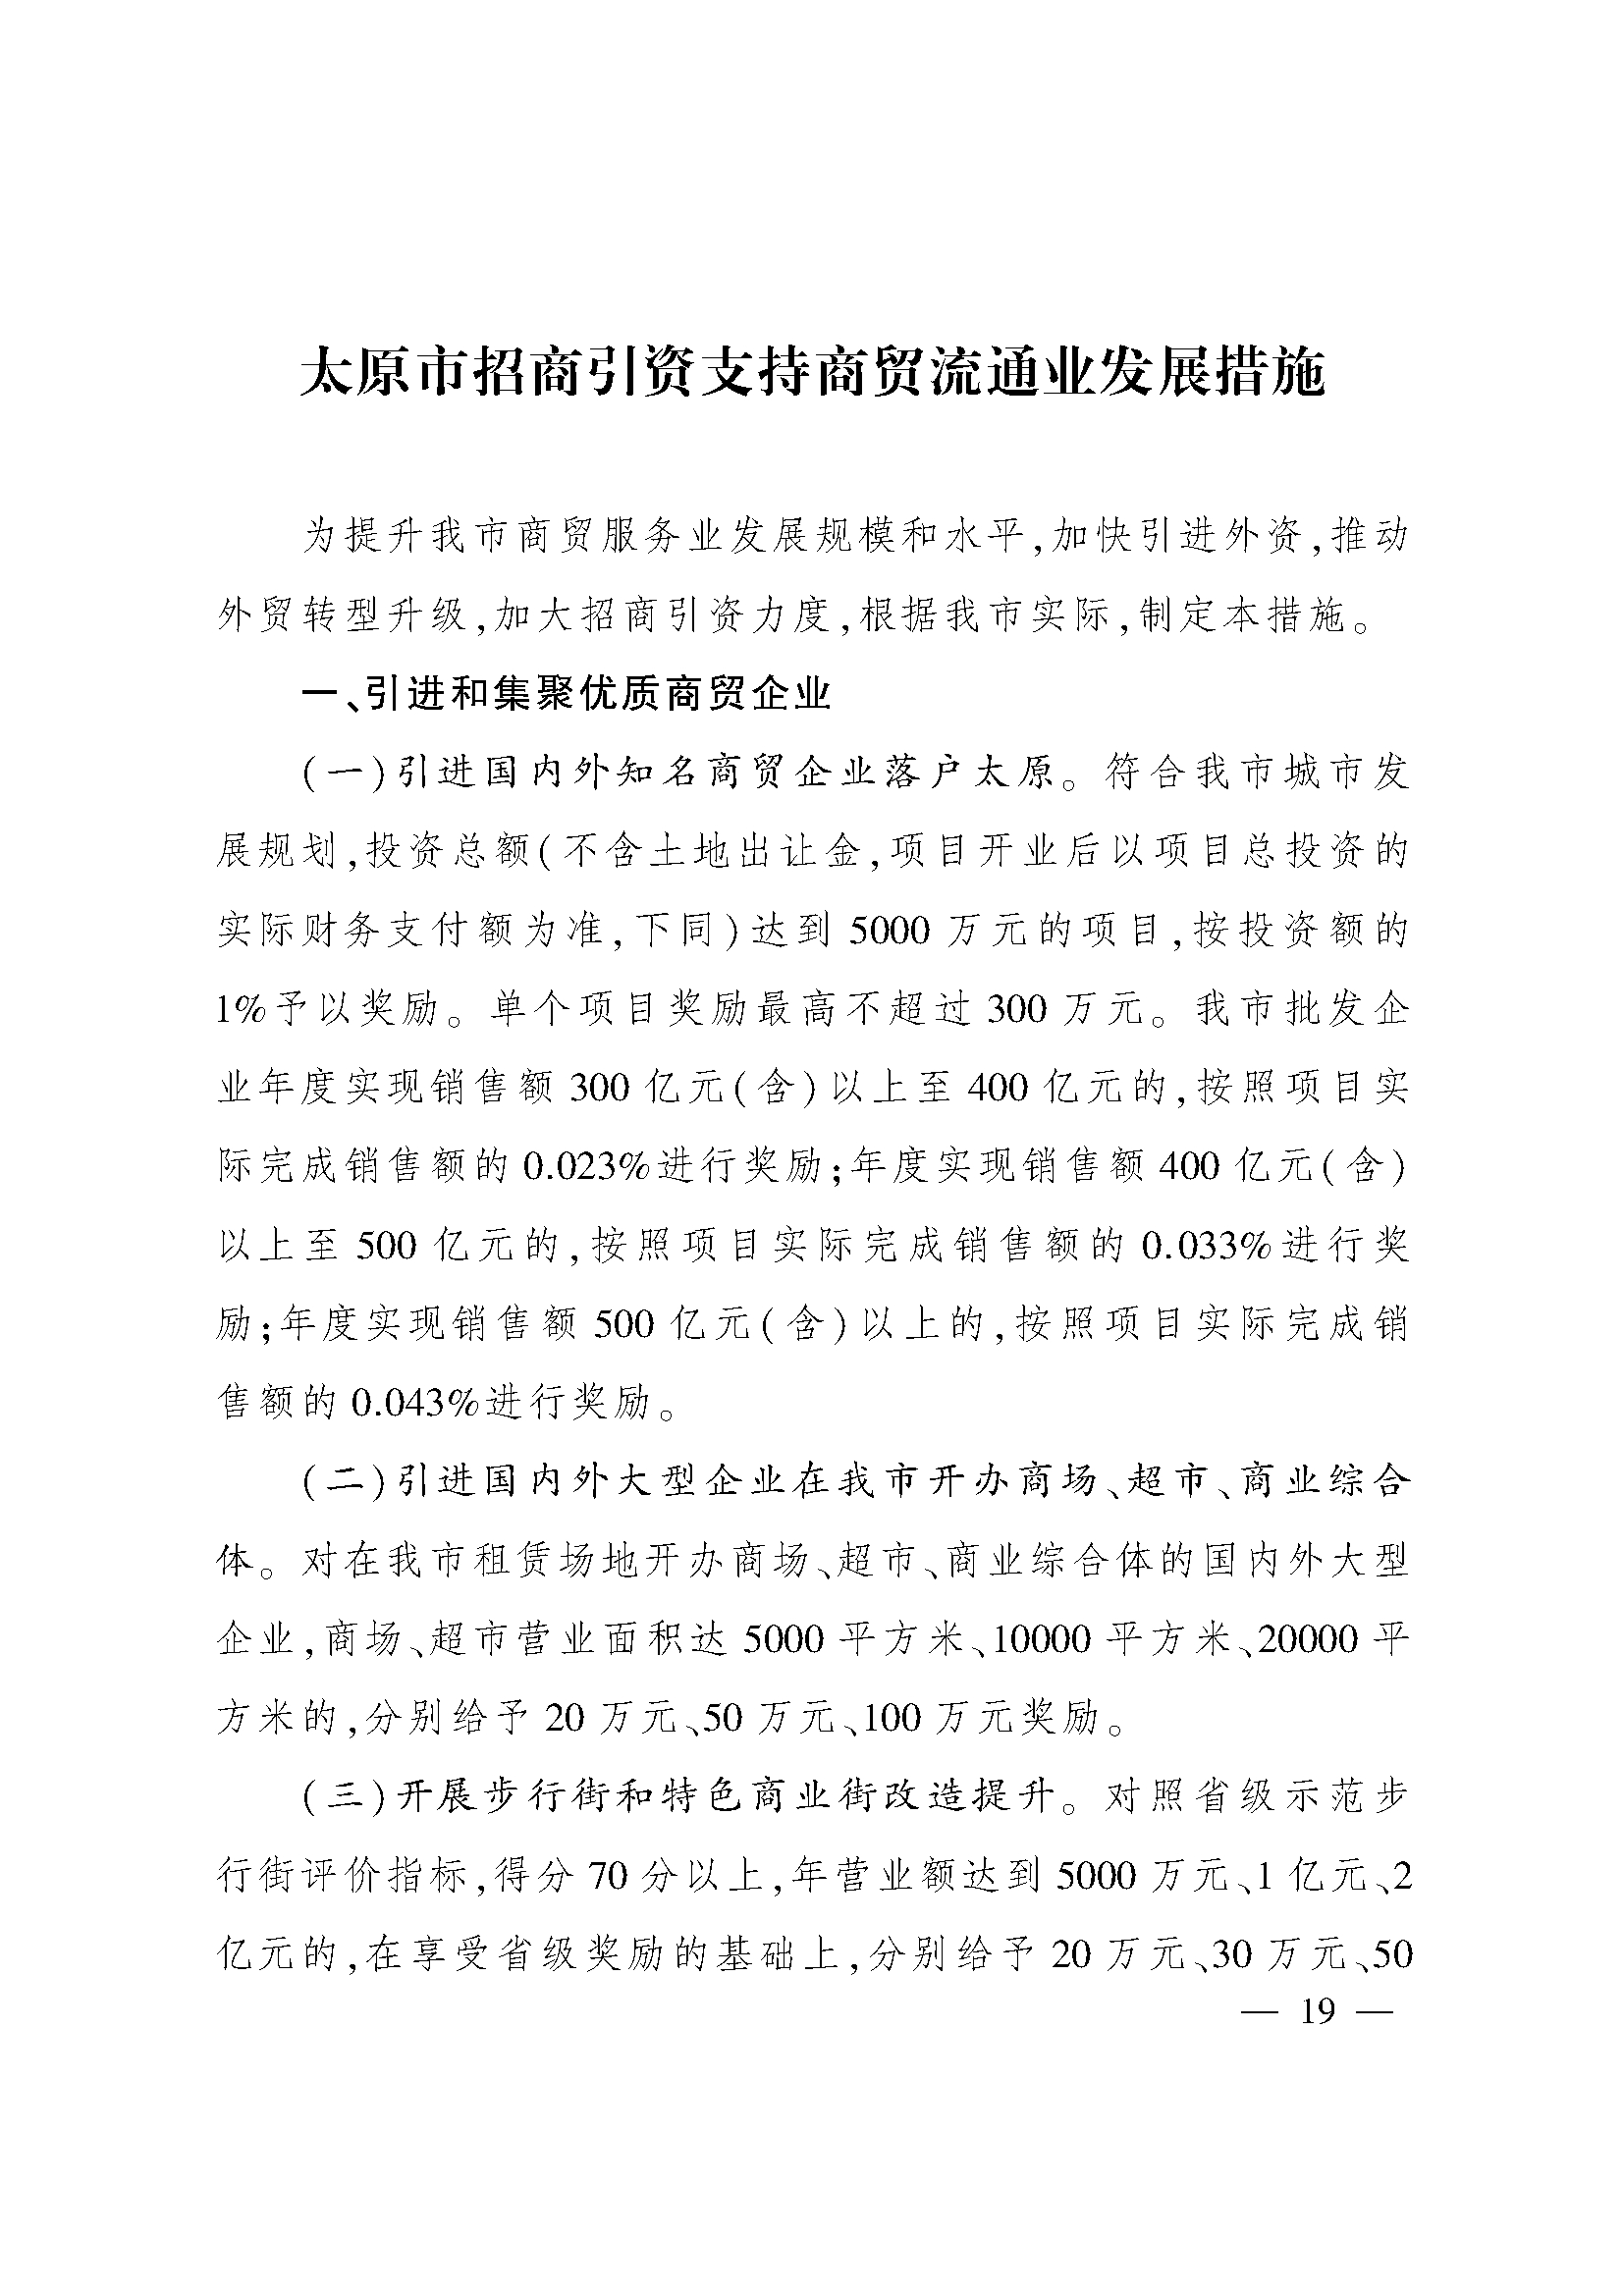 太原市人民政府办公室关于印发太原市招商引资若干措施的通知(图19)